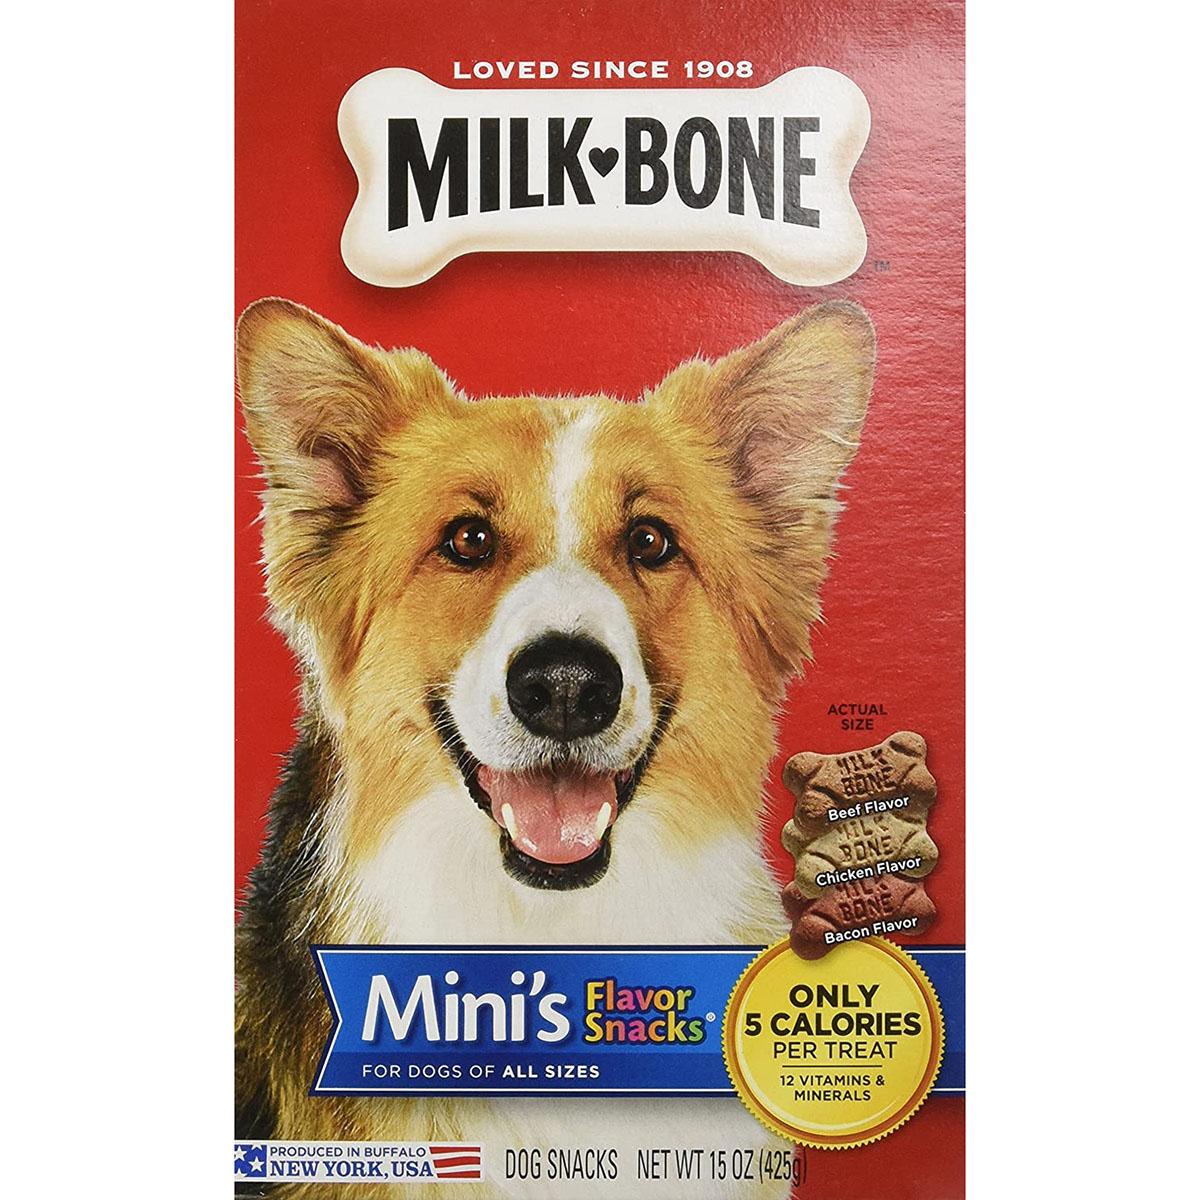 Milk-Bone Mini's Flavor Snacks Beef, Chicken & Bacon Flavored Biscuit Dog Treats